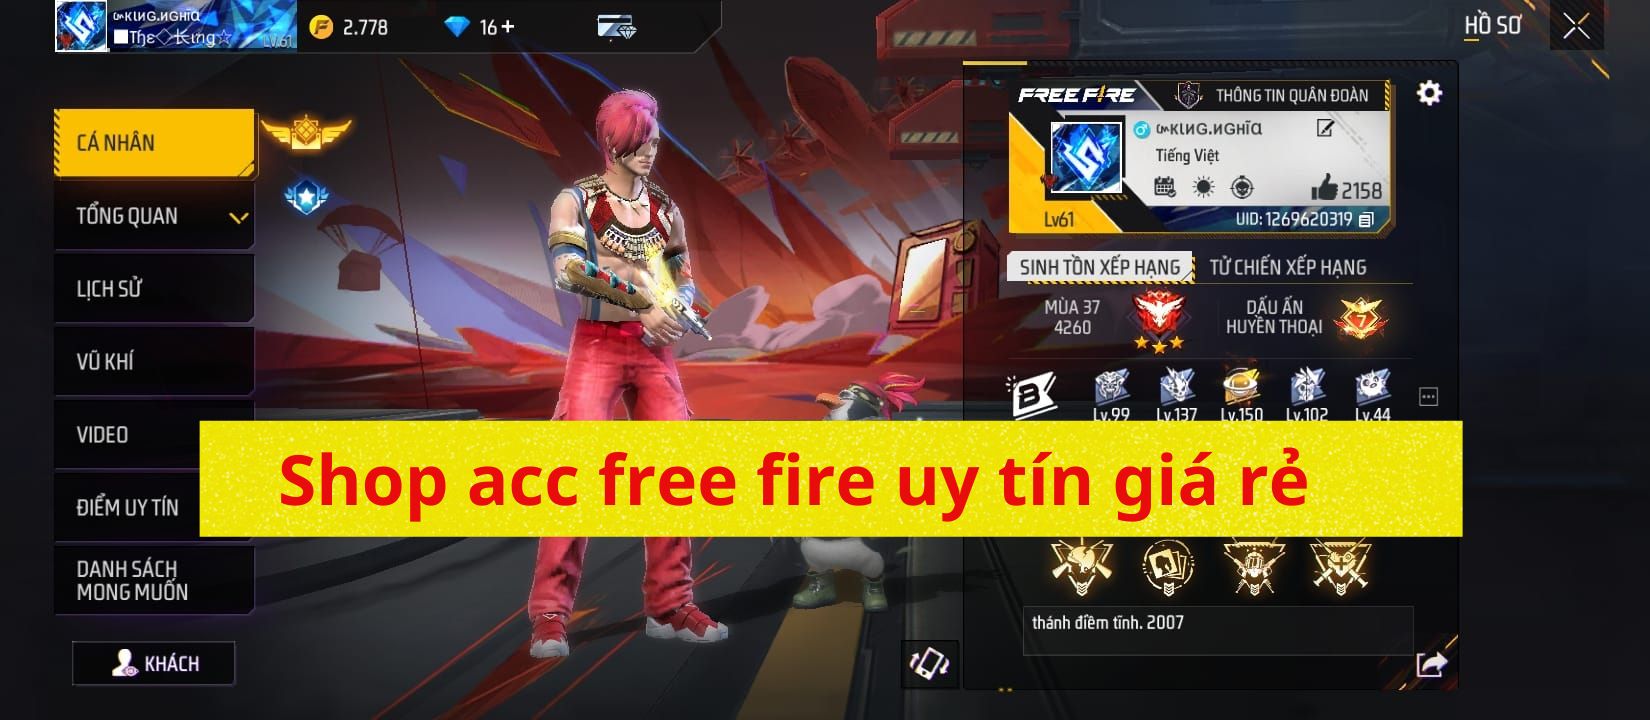 Shop acc free fire| Thu mua nick free fire uy tín giá rẻ